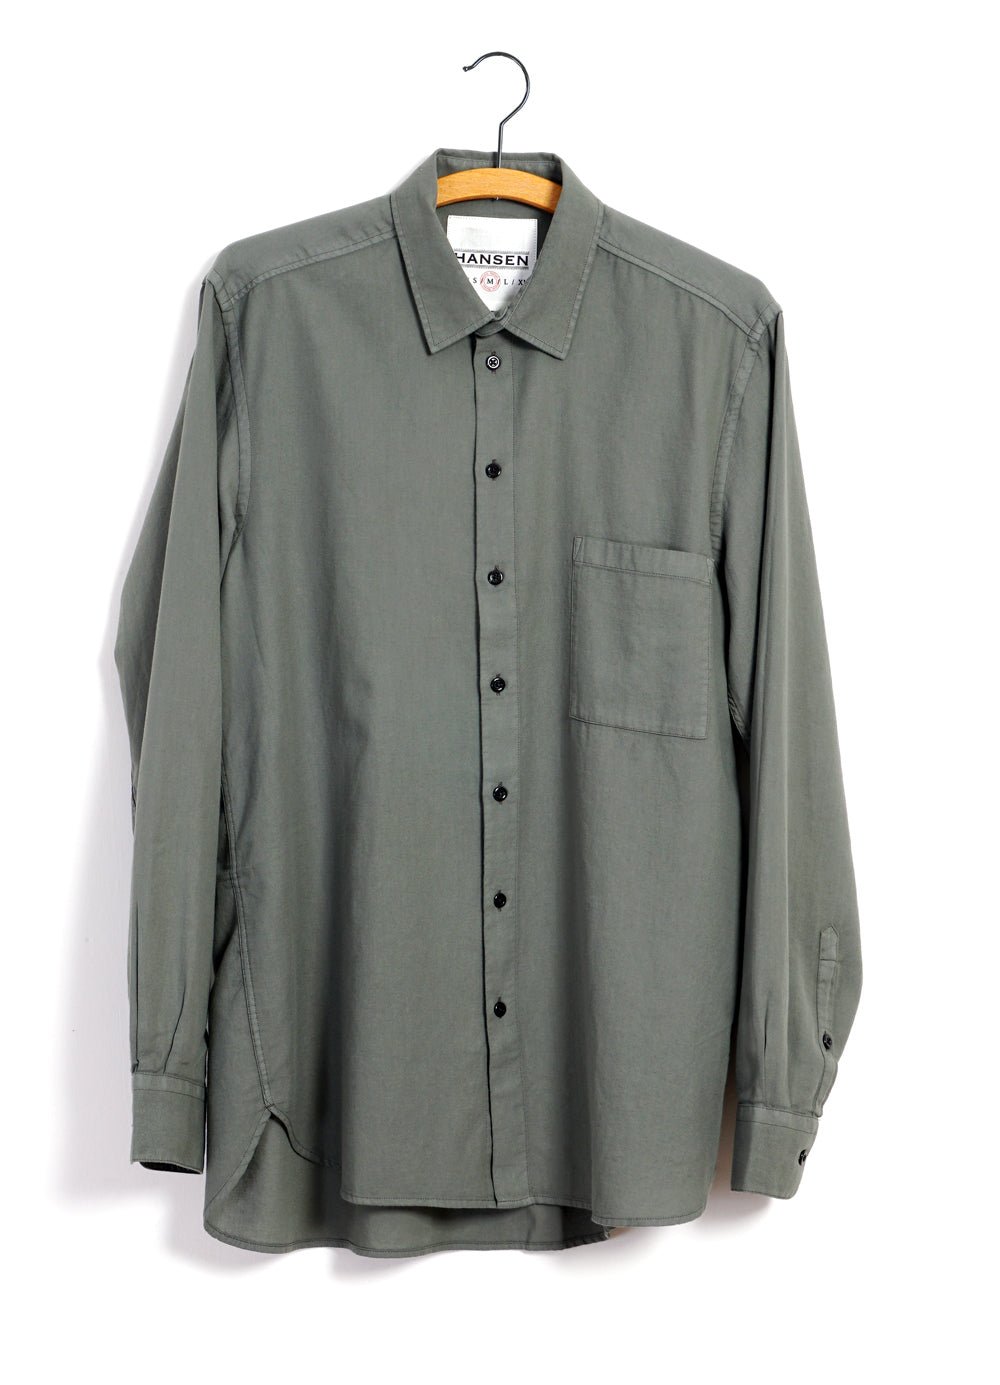 HANSEN GARMENTS - HENNING | Casual Classic Shirt | Eucalyptus - HANSEN Garments